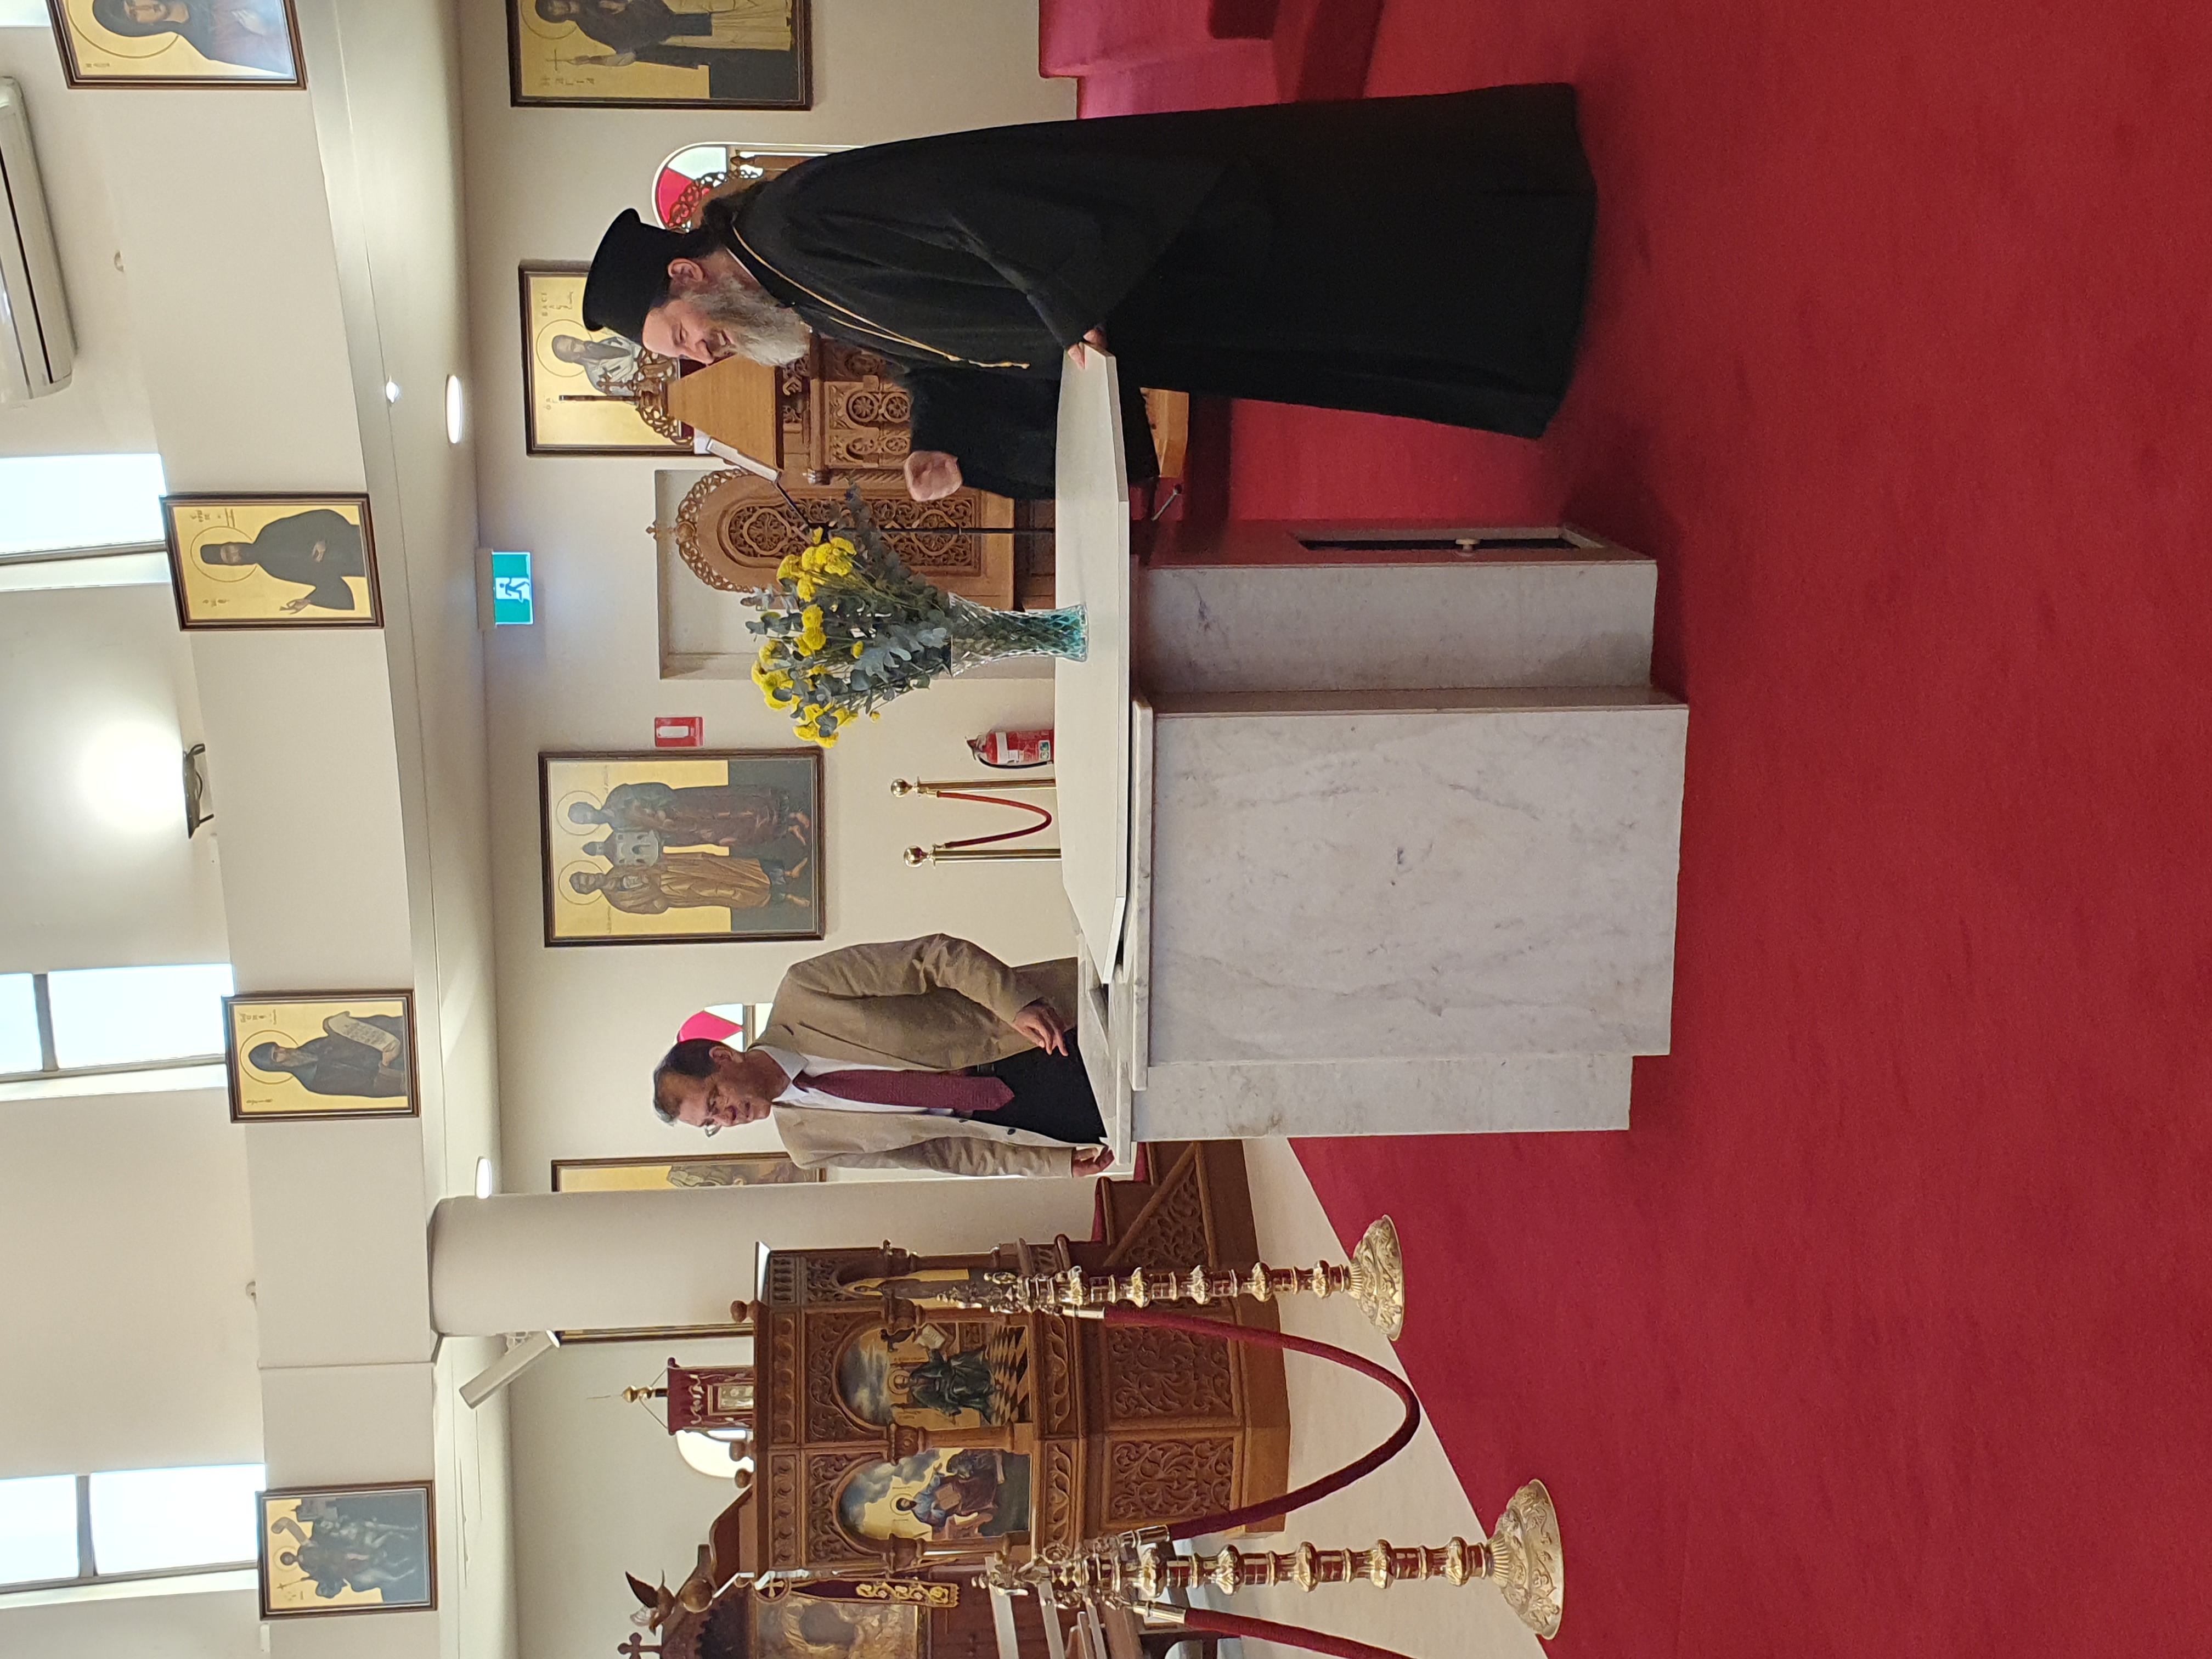 Ο Πρέσβης της Ελλάδος στην Αυστραλία επισκέφθηκε την έδρα της Αρχιεπισκοπικής Περιφέρειας Πέρθης